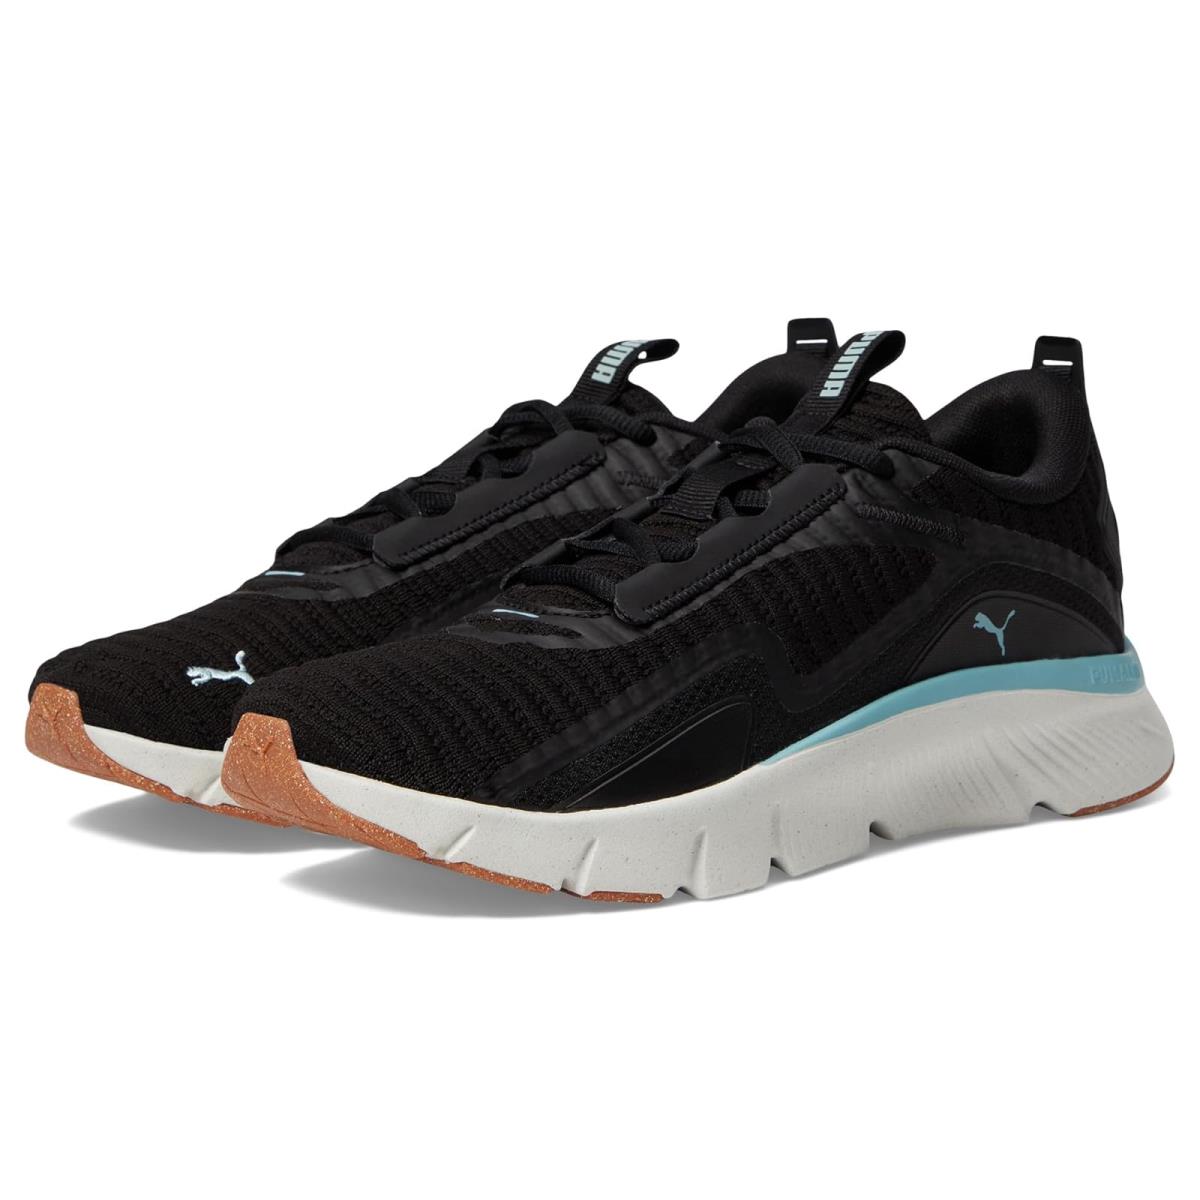 Woman`s Sneakers Athletic Shoes Puma Flexfocus Lite Better Knit PUMA Black/Turquoise Surf